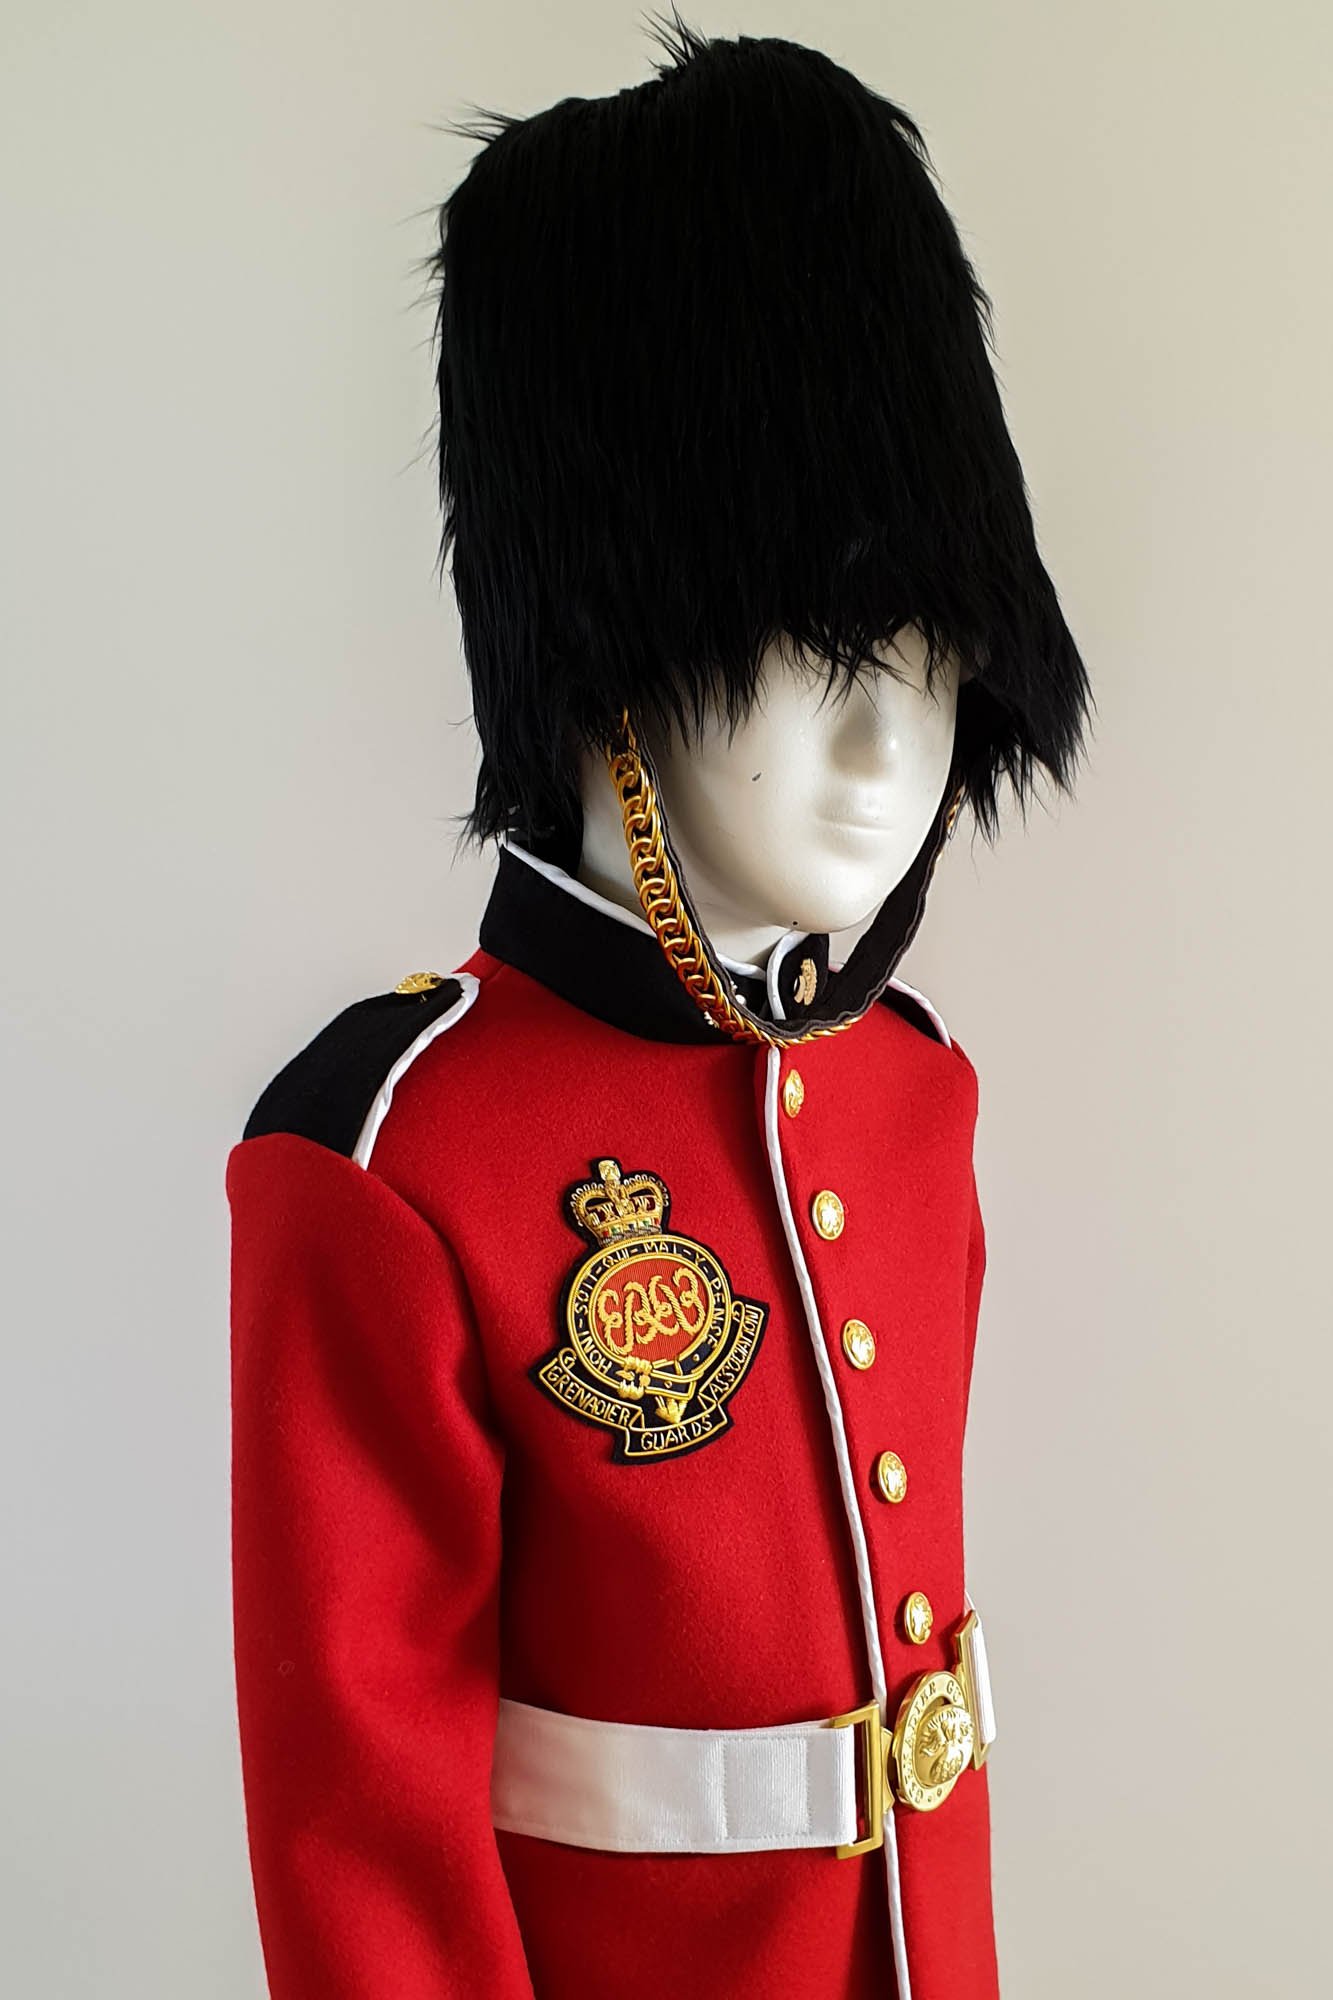 Costume de soldat grenadier royal britannique pour enfants